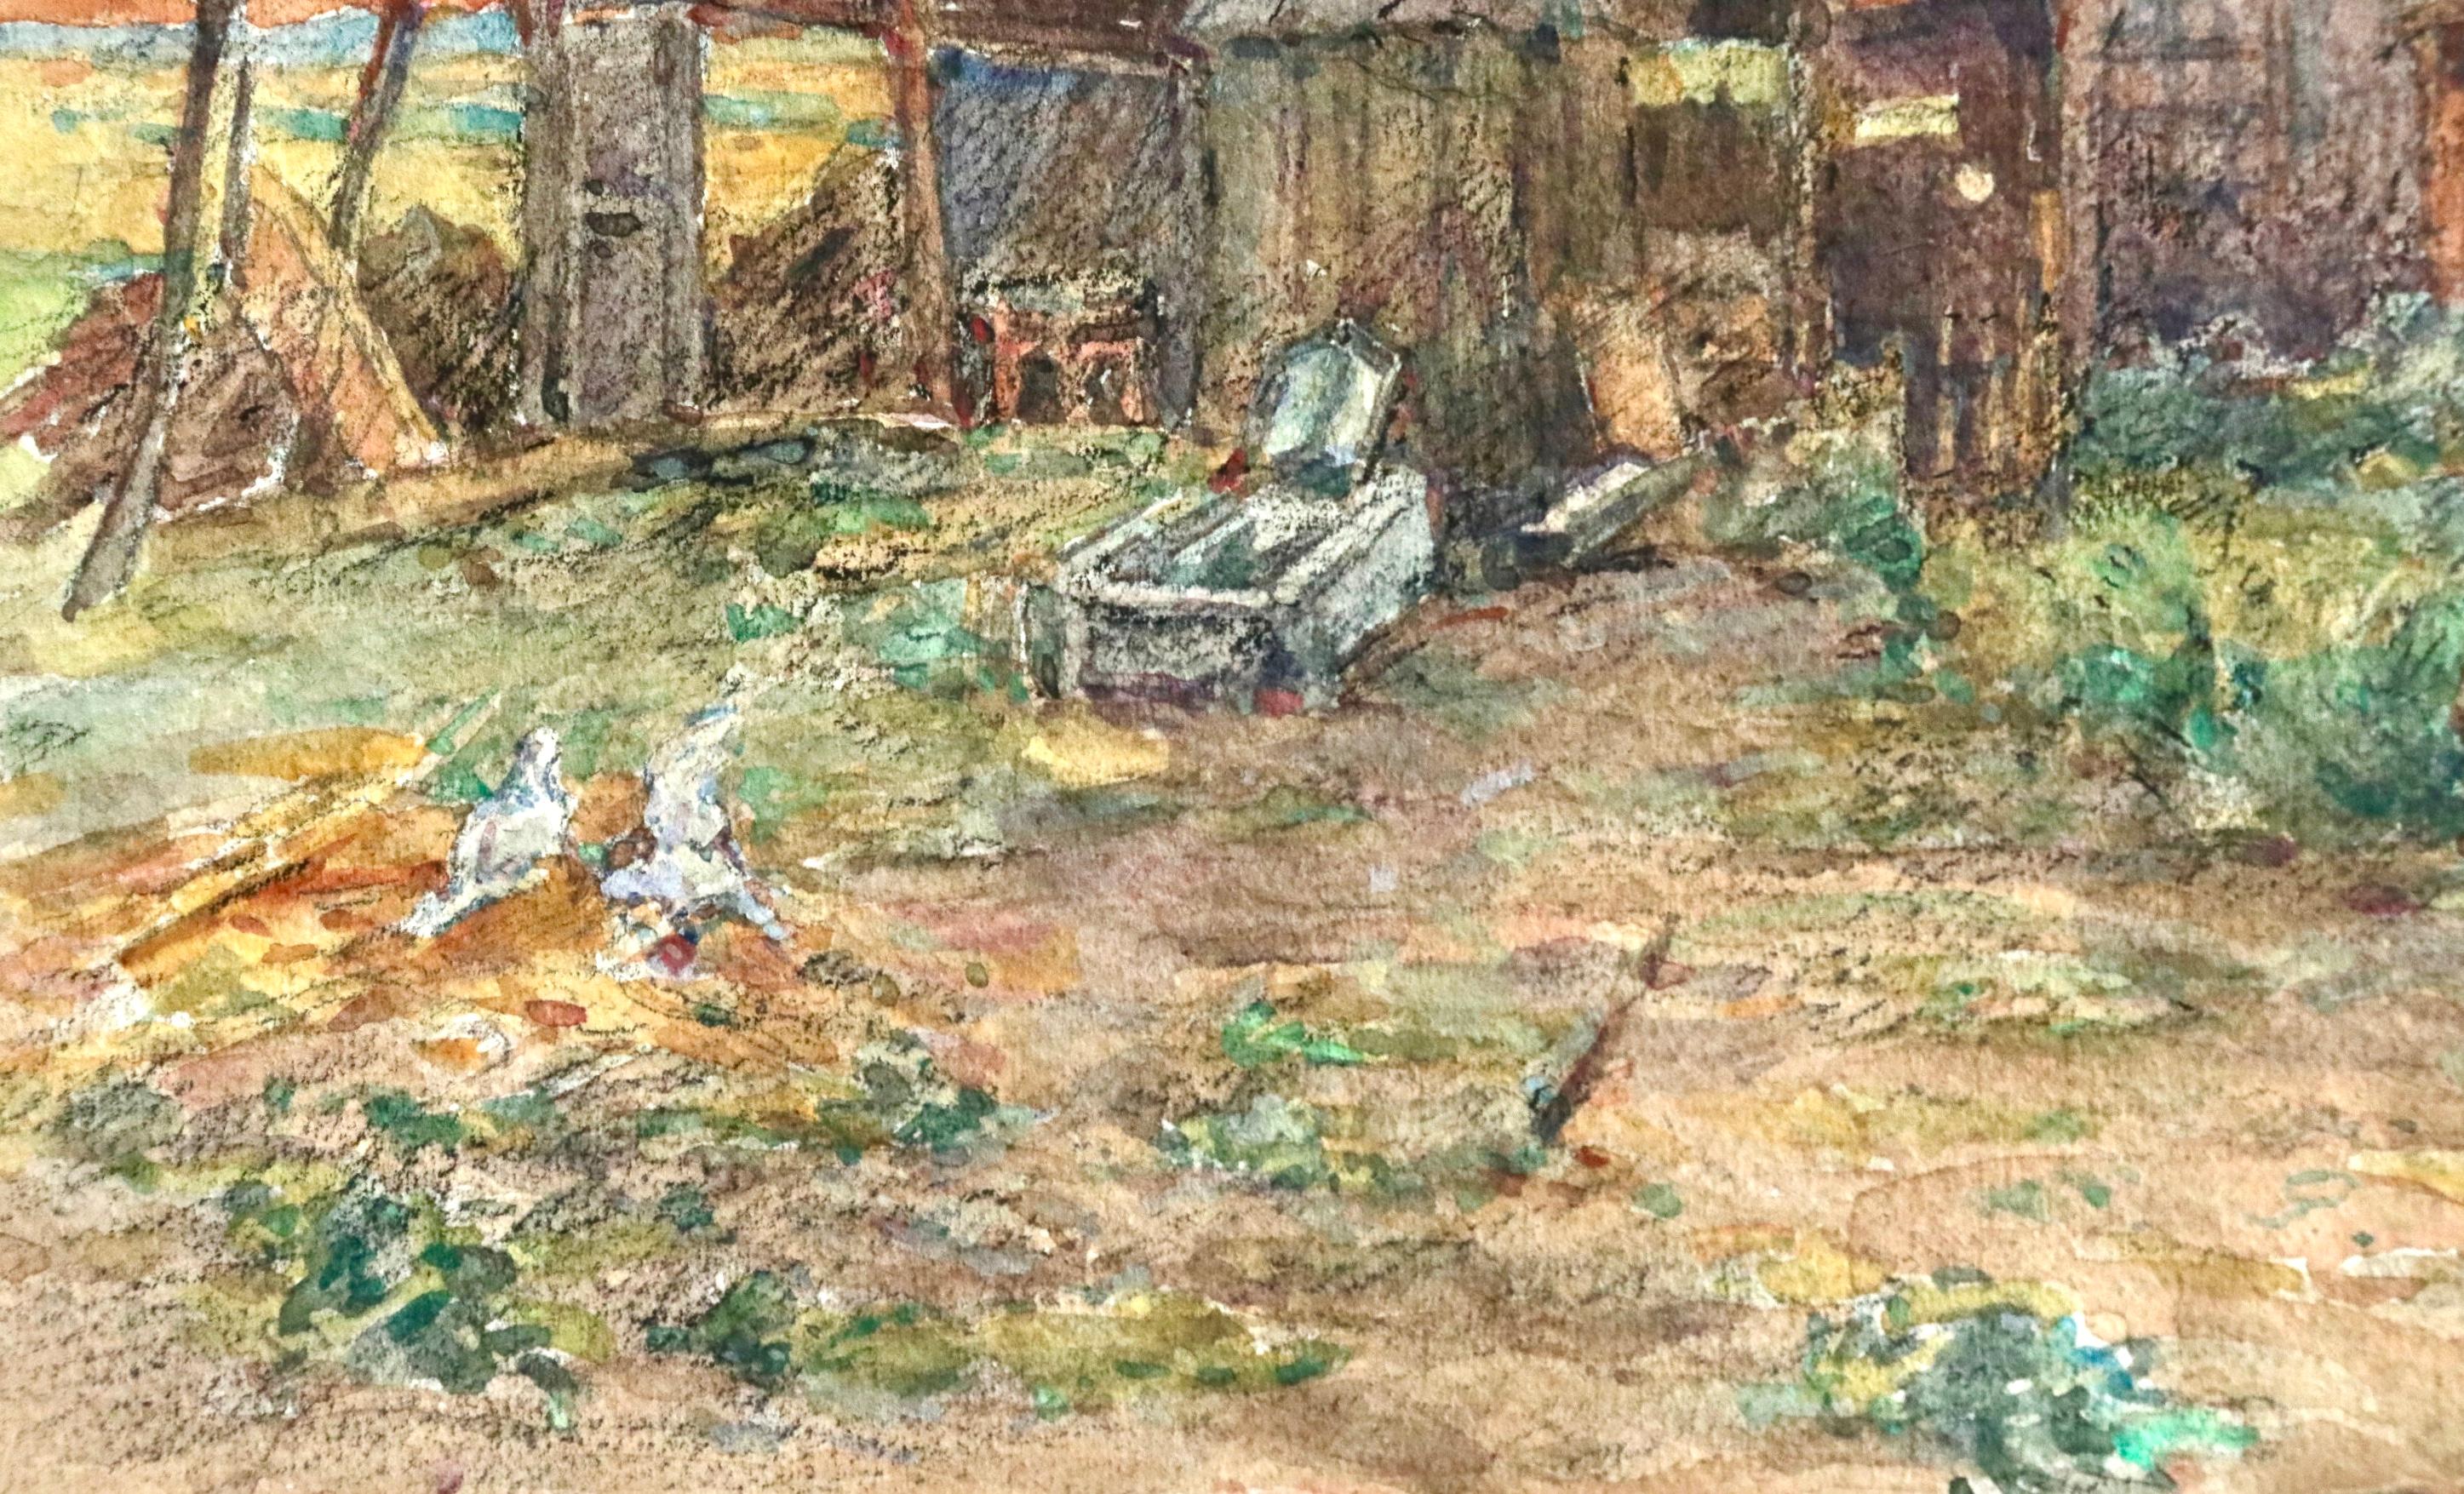 Aquarelle sur papier vers 1925 représentant une jeune fille courant dans une cour de ferme alors que le soleil se couche au loin. Signé en bas à droite. Cette peinture n'est pas actuellement encadrée mais un cadre approprié peut être trouvé si